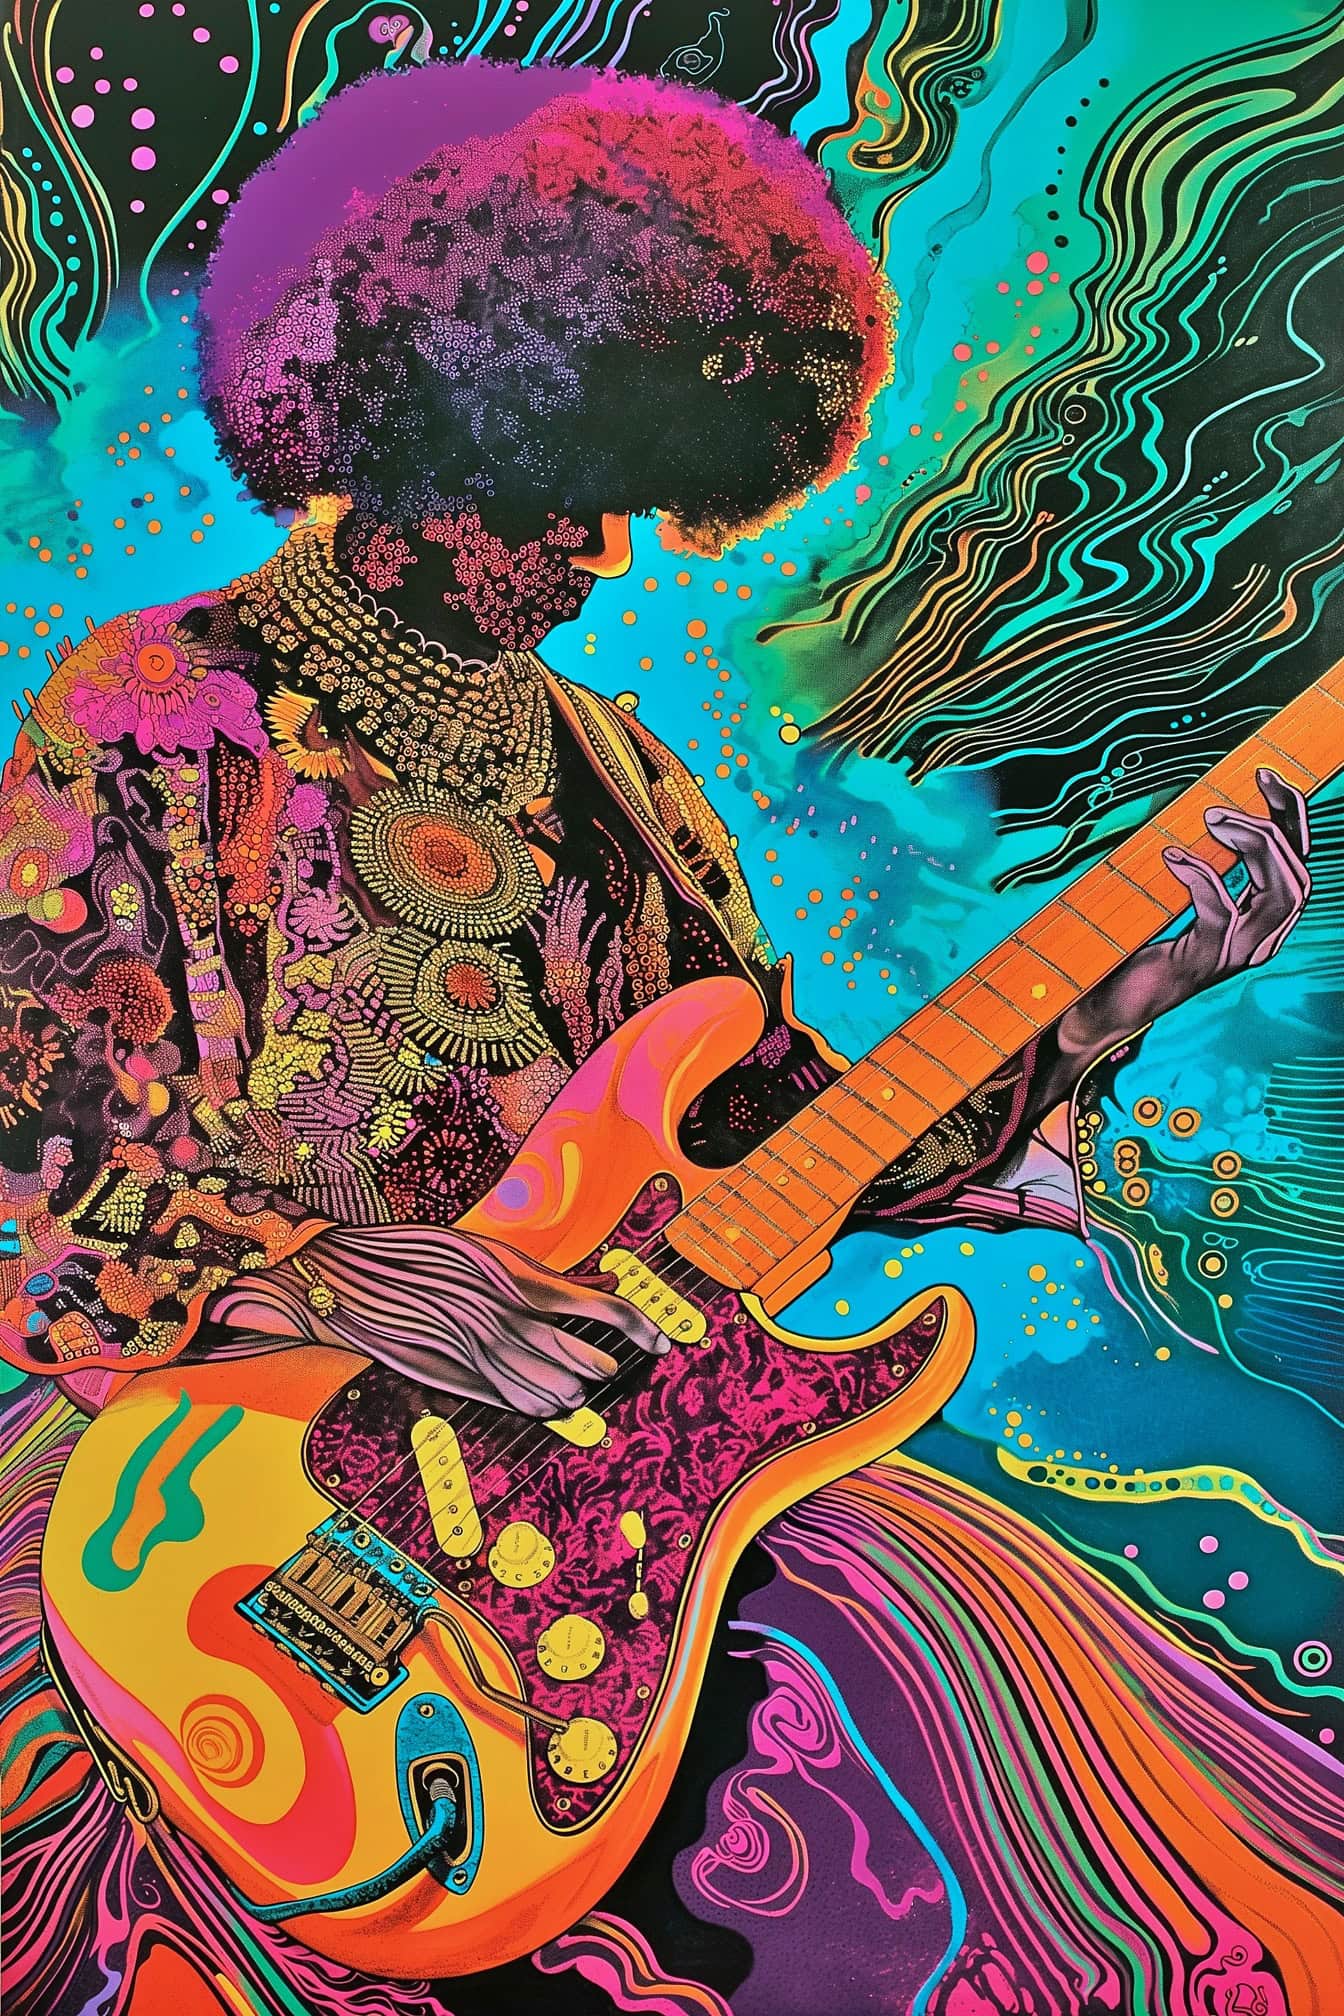 Μια υπνωτική απεικόνιση του Jimi Hendrix να παίζει κιθάρα σε ένα μείγμα ψυχεδελικού και pop art στυλ